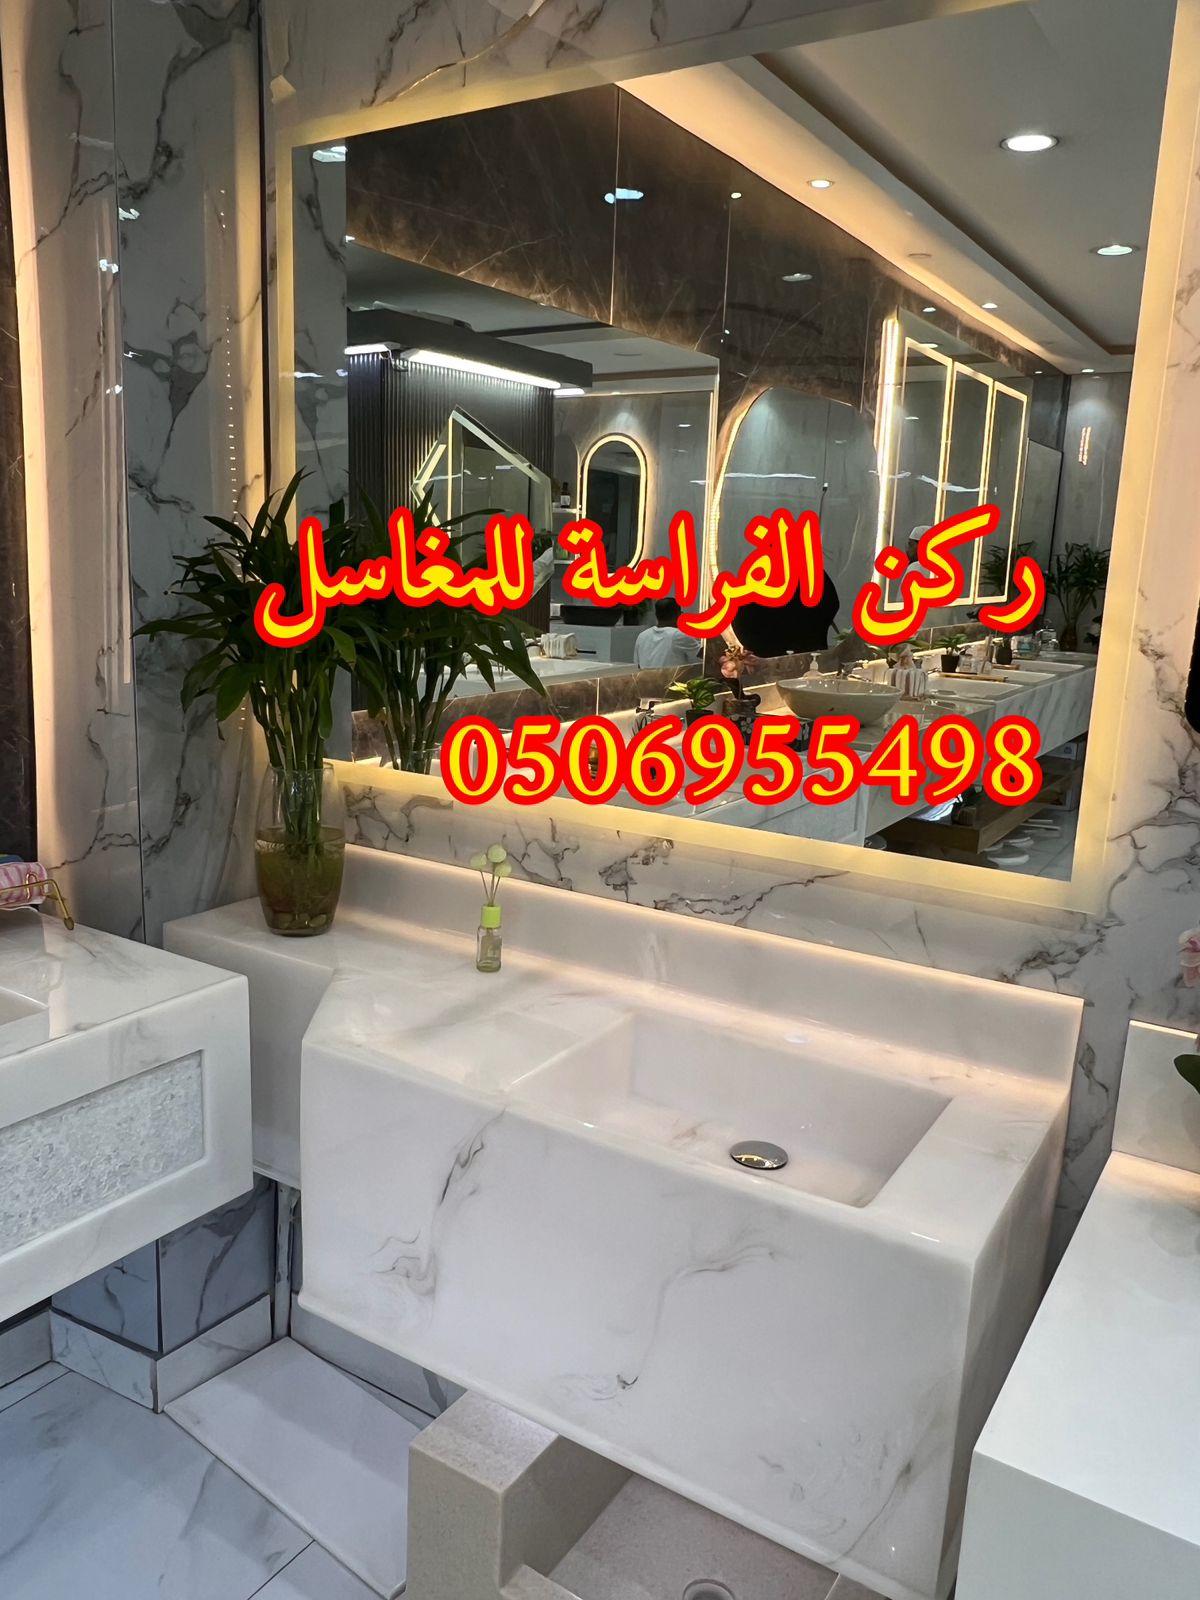 تفصيل ديكورات مغاسل حمامات رخام في الرياض,0506955498 589658231